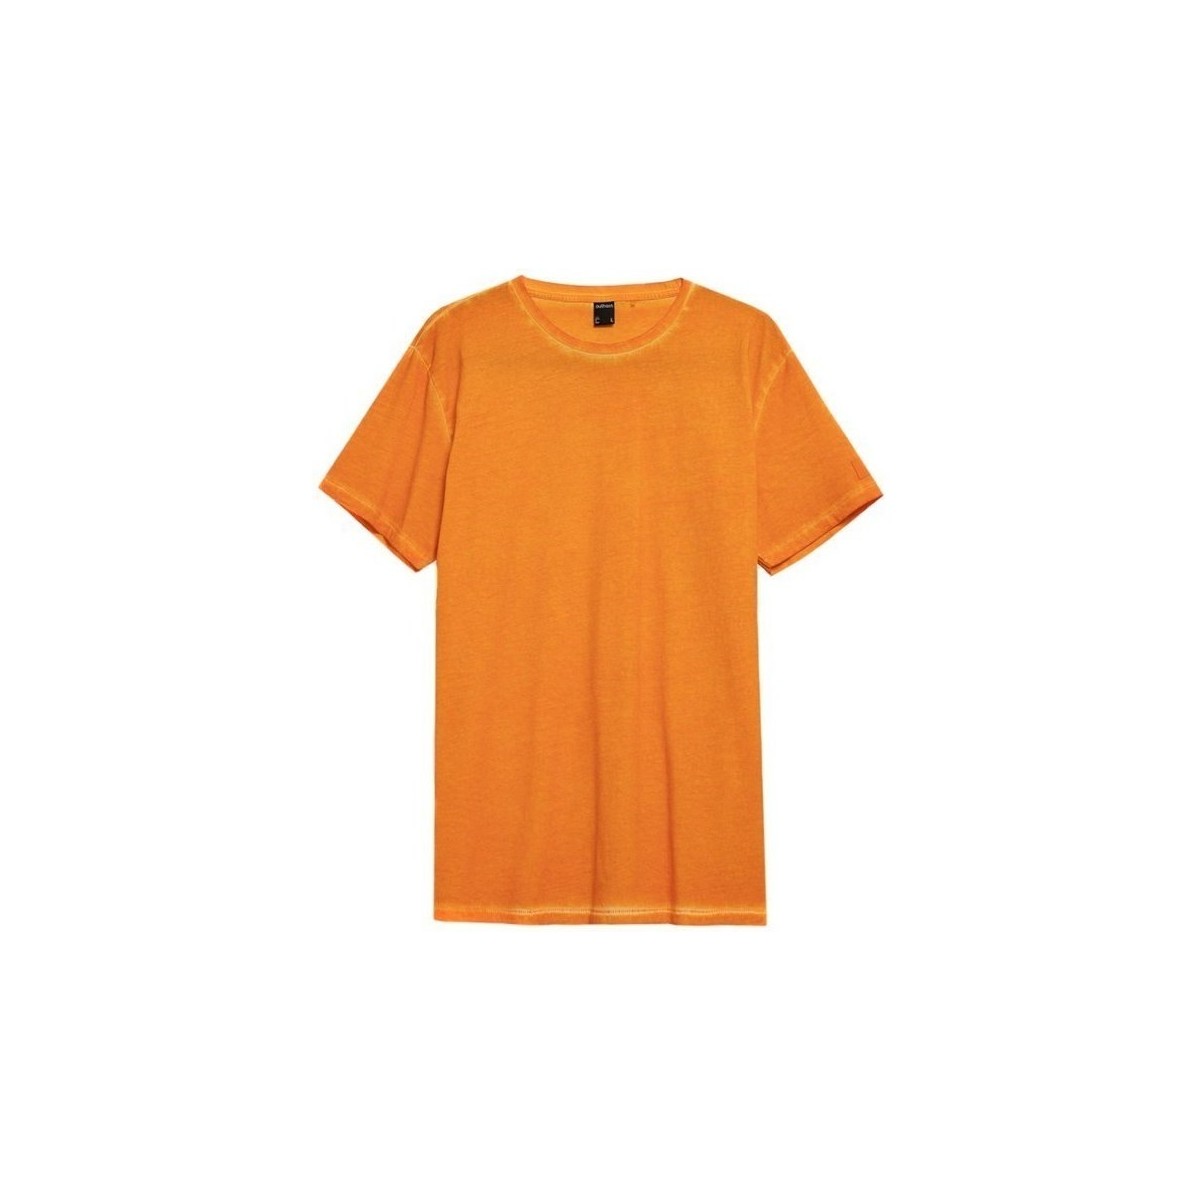 Oblačila Moški Majice s kratkimi rokavi Outhorn TSM603 Oranžna